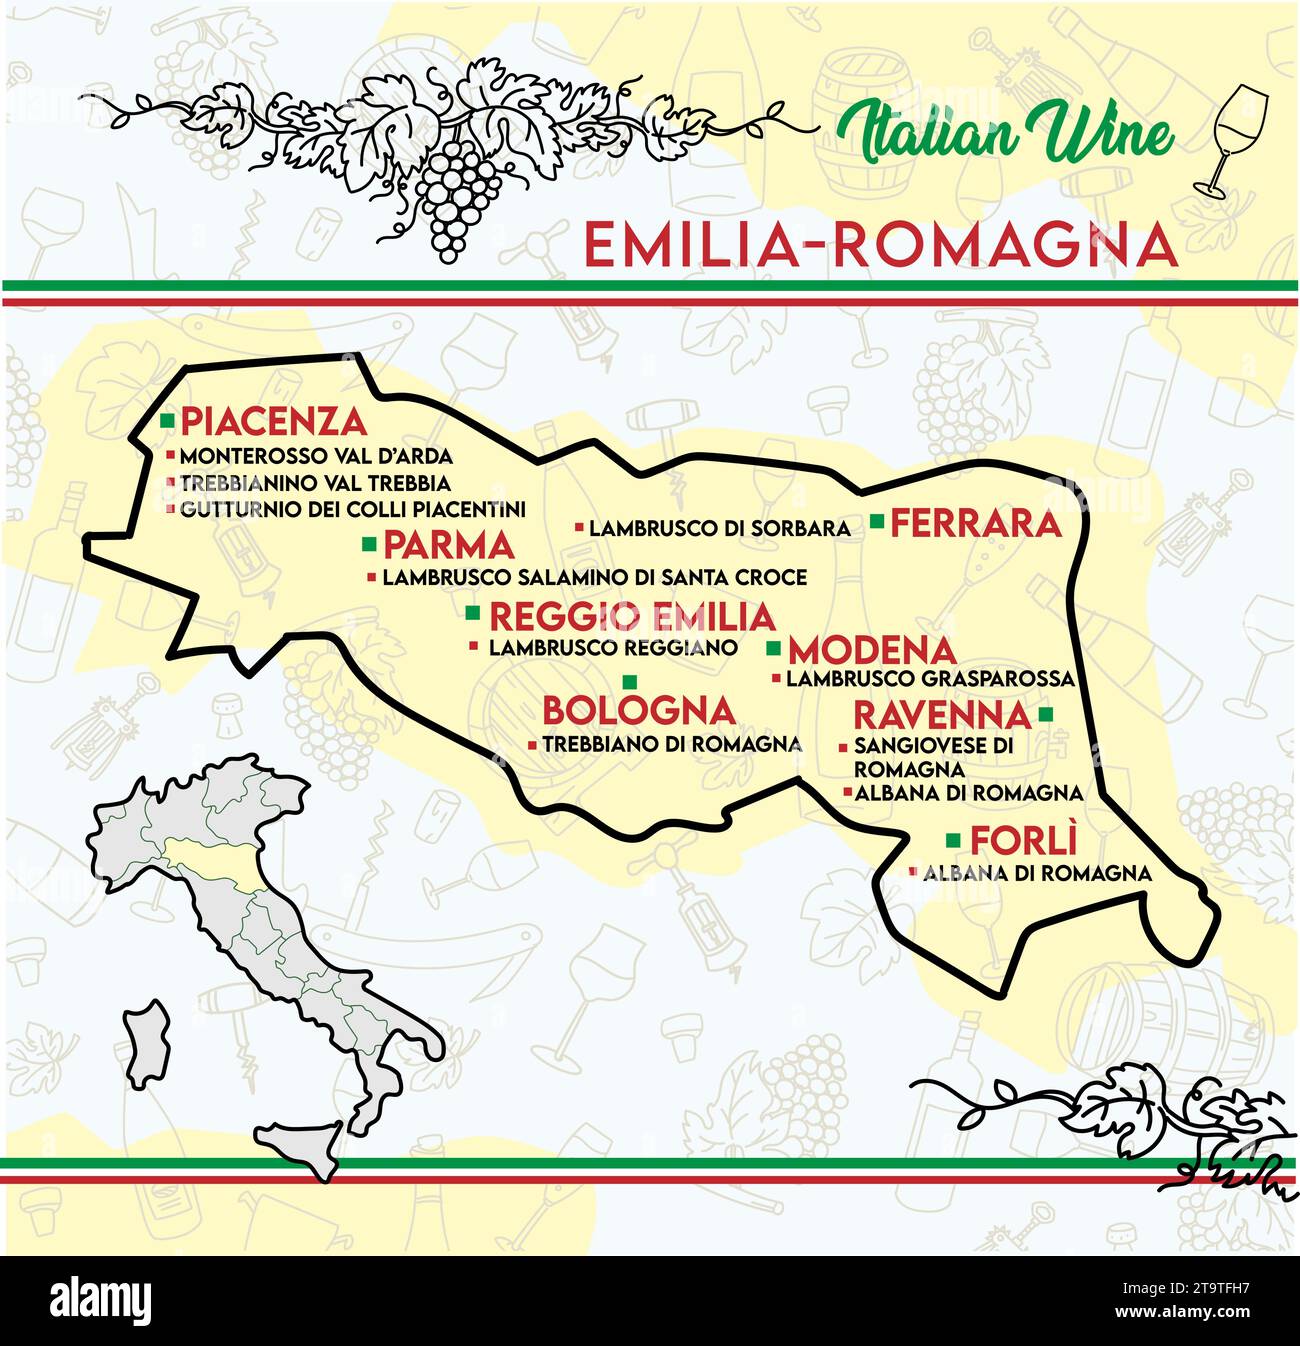 Carta dei vini tipici dell'Emilia Romagna, Italia. illustrazione vettoriale Illustrazione Vettoriale